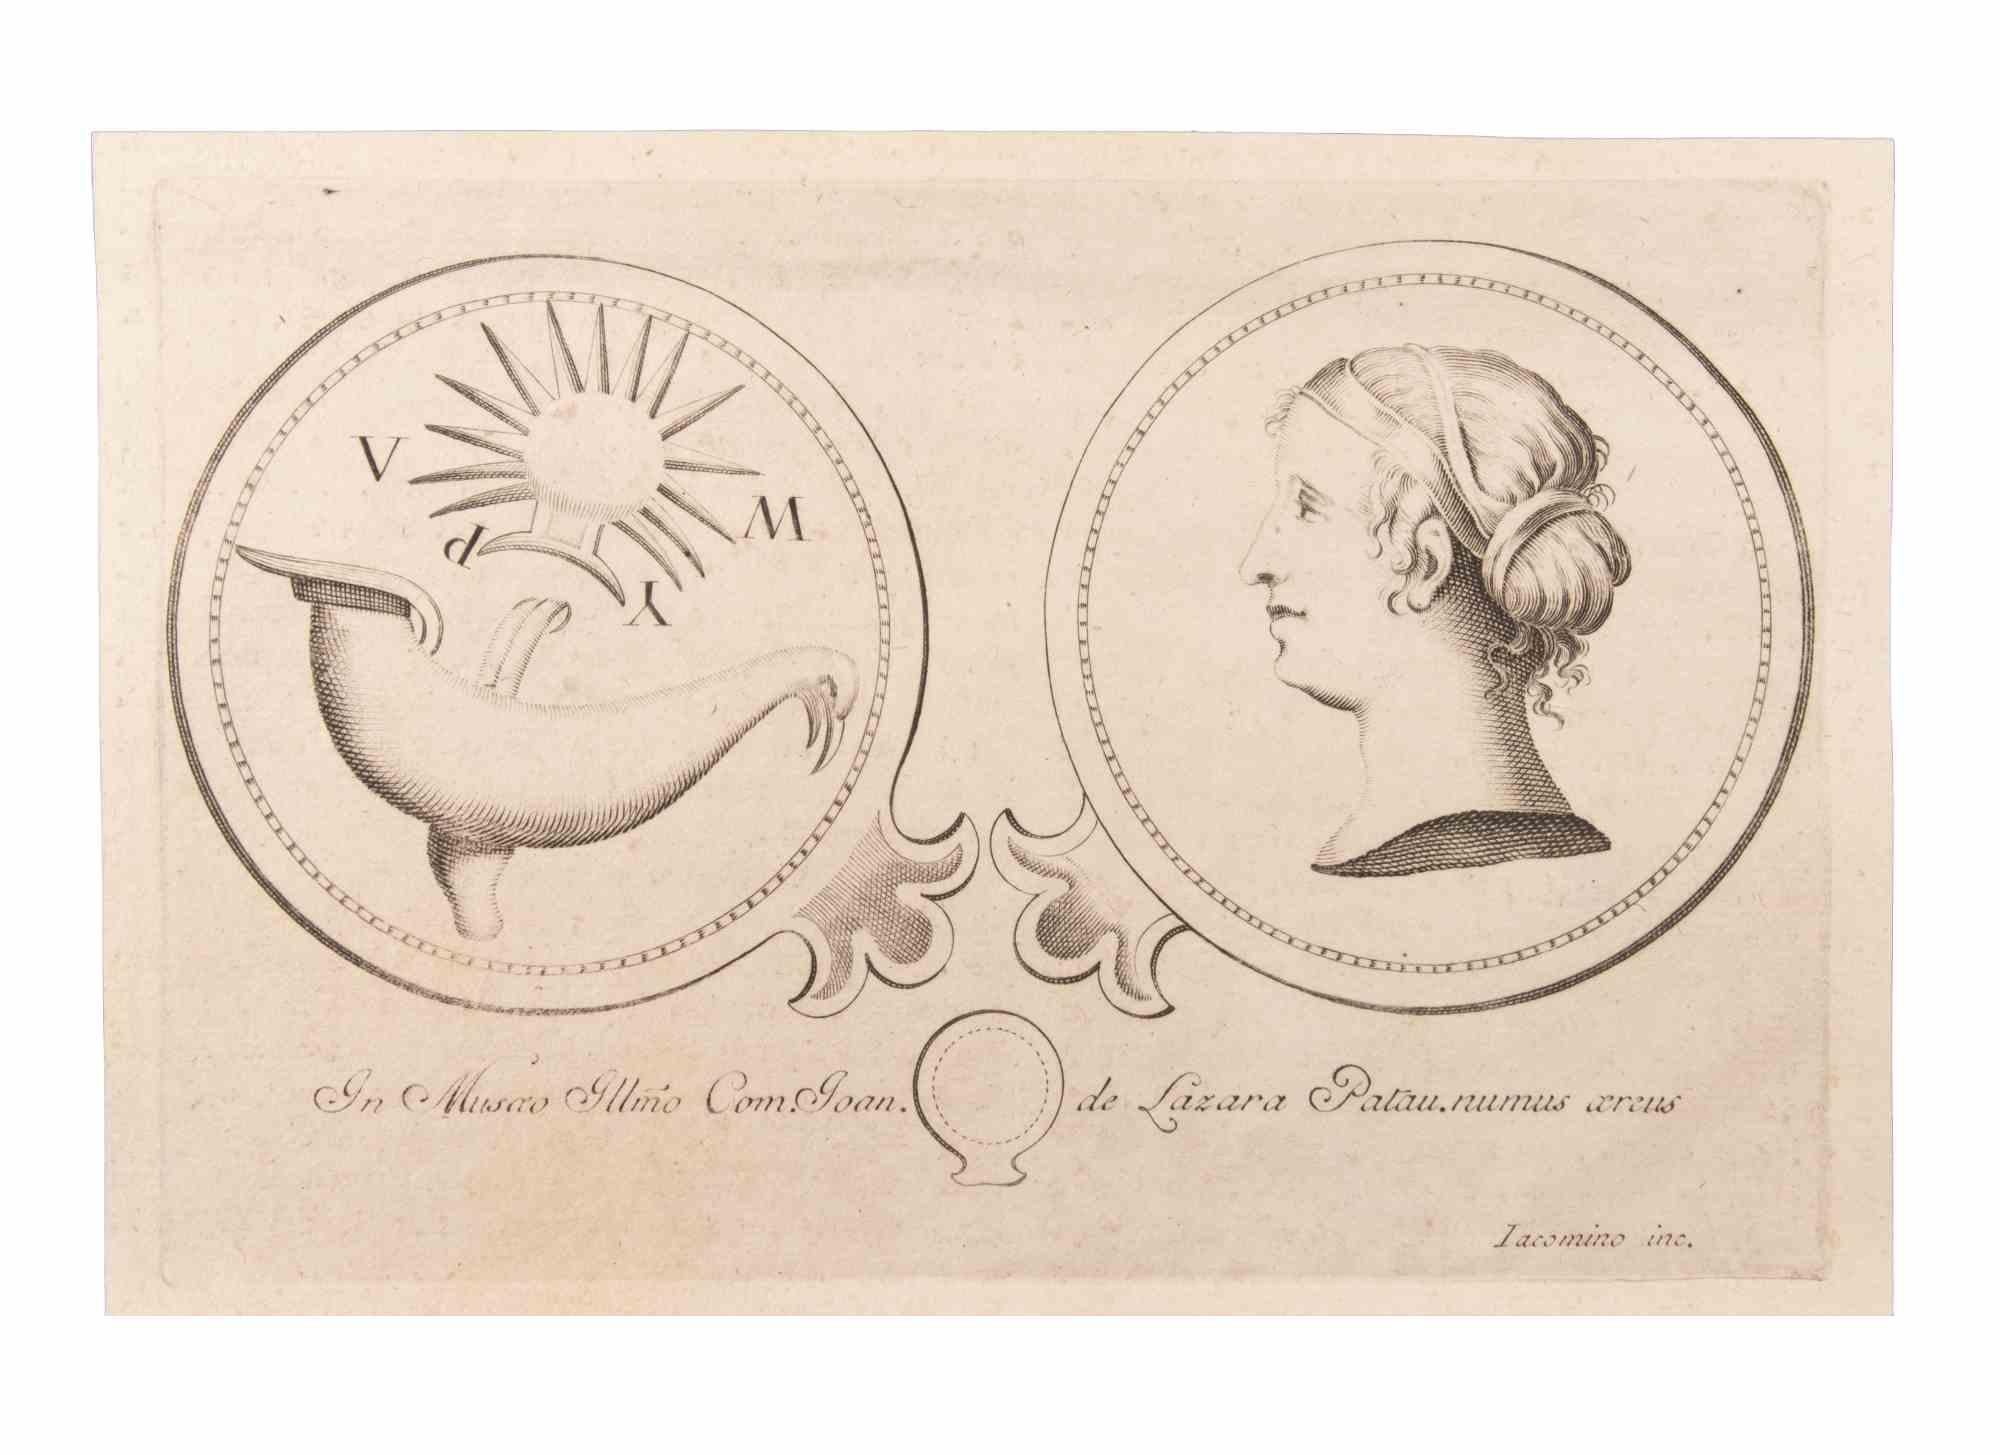 La décoration est une eau-forte réalisée par Marcantonio Iacomino (XVIIIe siècle).

La gravure appartient à la suite d'estampes "Antiquités d'Herculanum exposées" (titre original : "Le Antichità di Ercolano Esposte"), un volume de huit gravures des